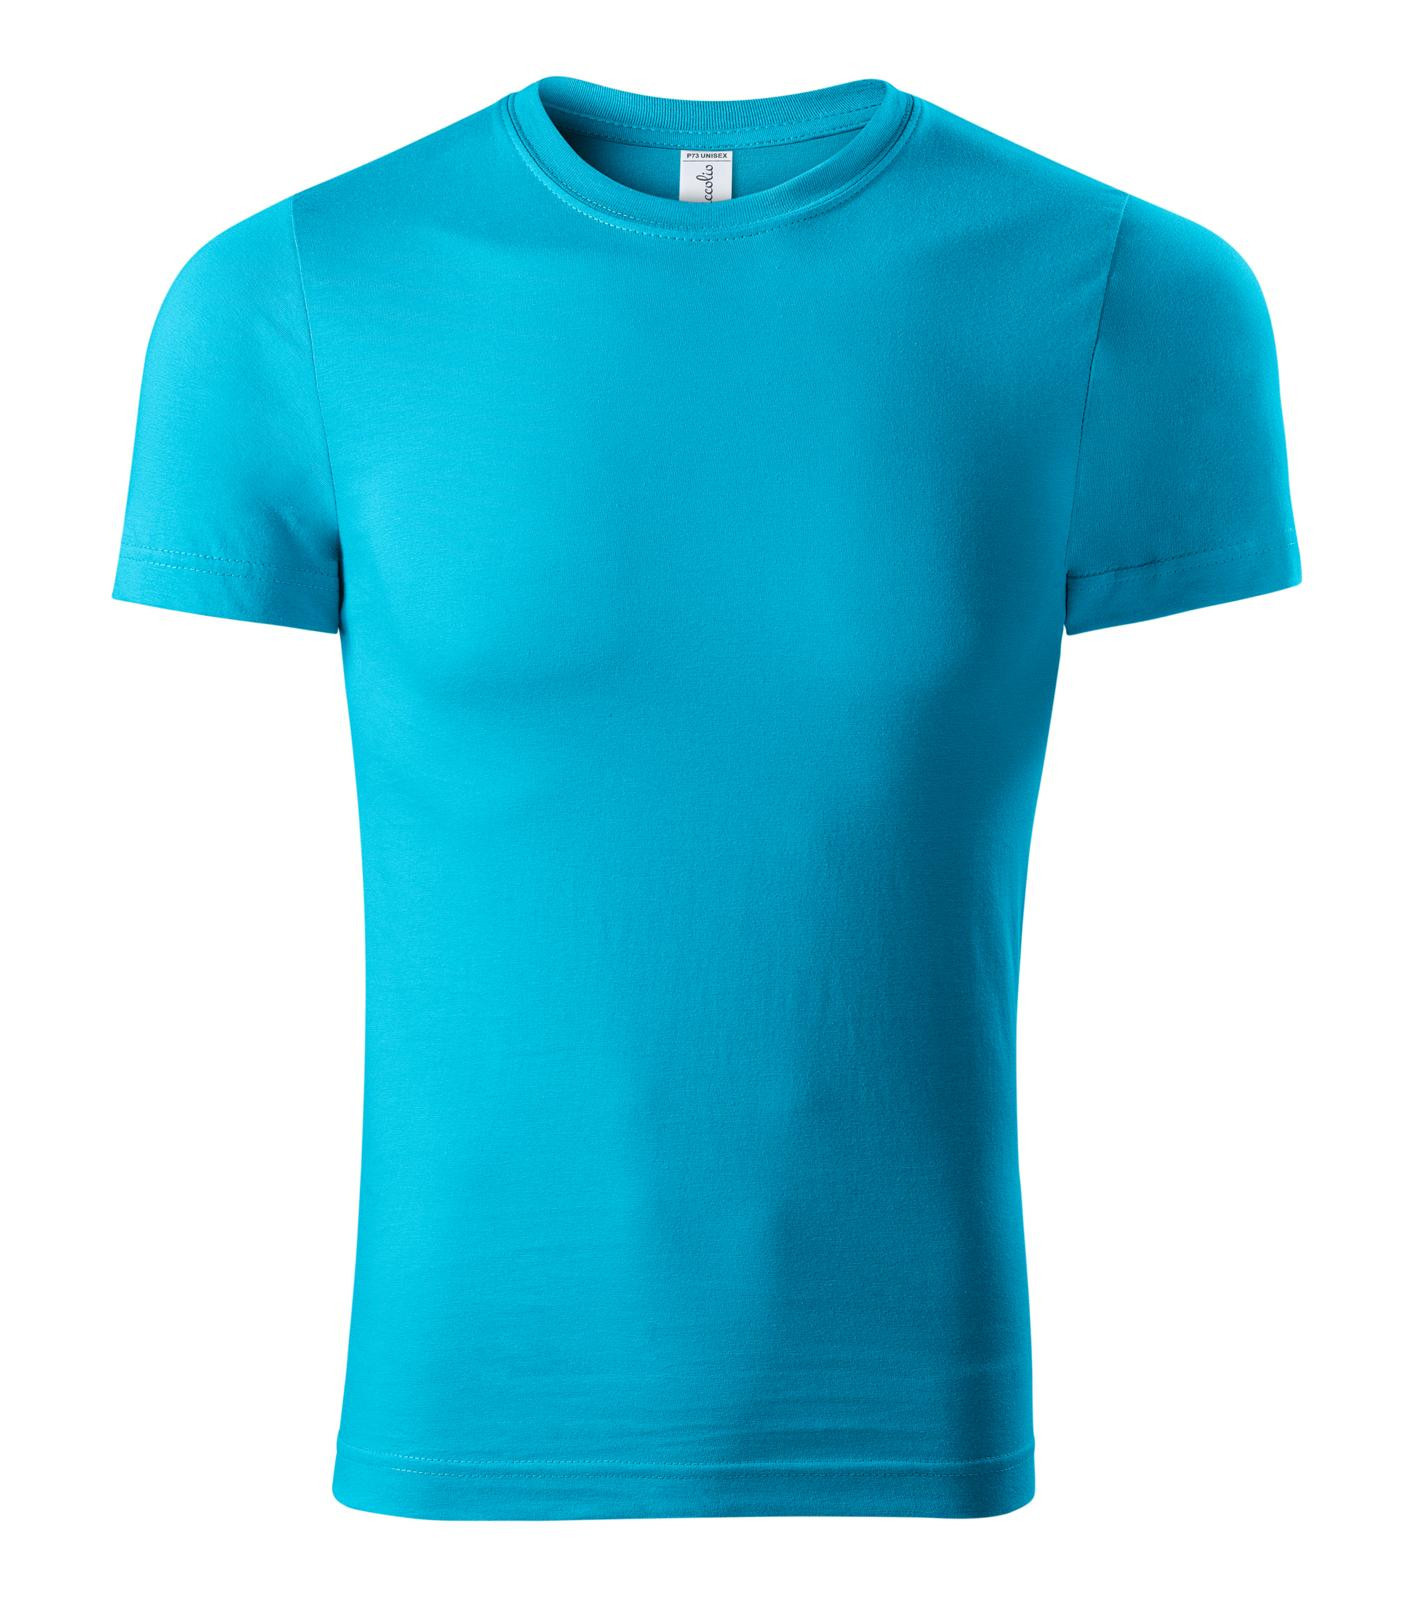 Unisex tričko Piccolio Paint P73 - veľkosť: S, farba: tyrkysová